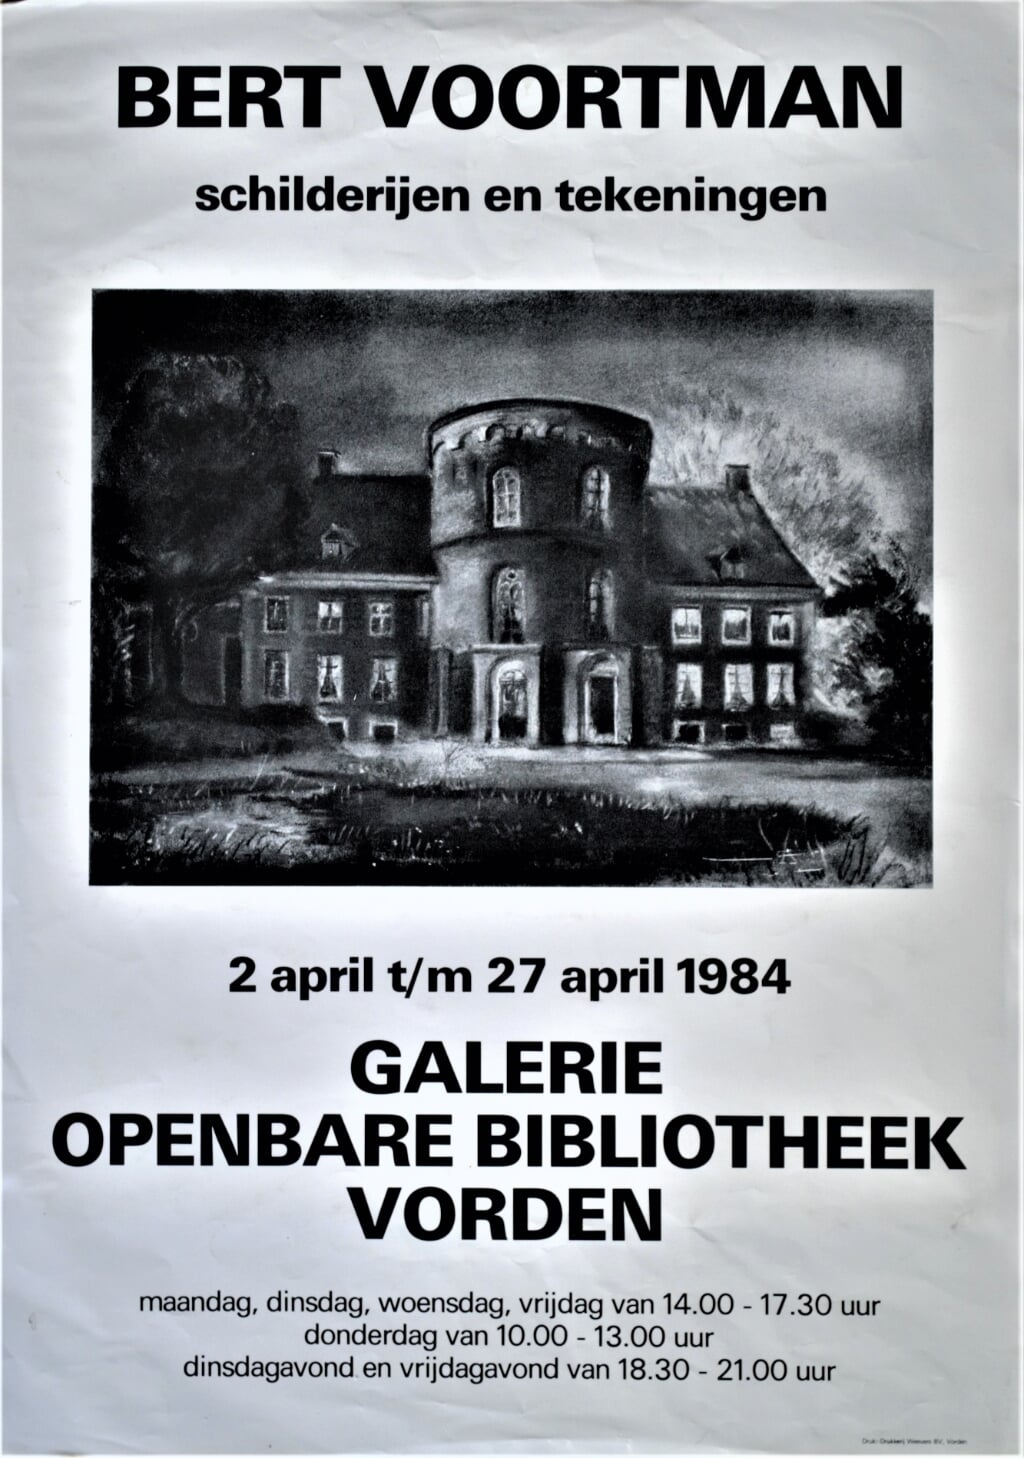 Een poster voor een expositie in de Vordense bibliotheek, in april 1984. Beeld: archief Willem Sprengers